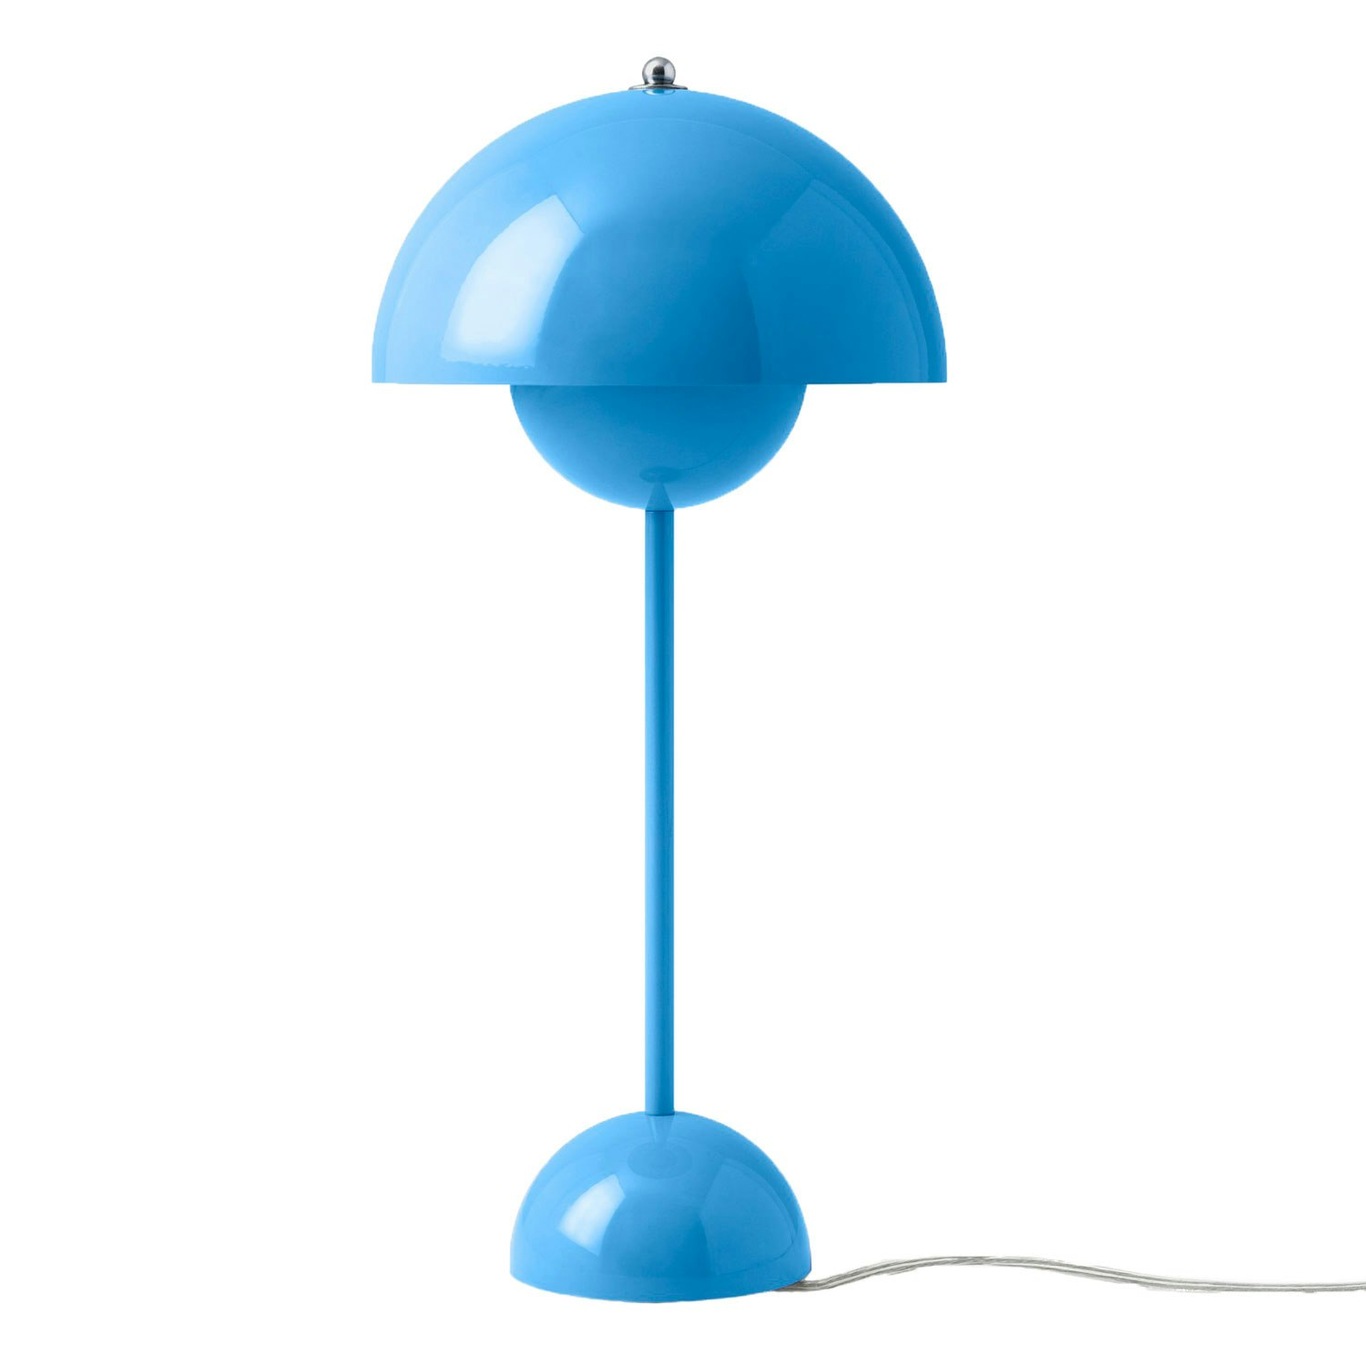 Flowerpot VP3 Table Lamp, Swim Blue